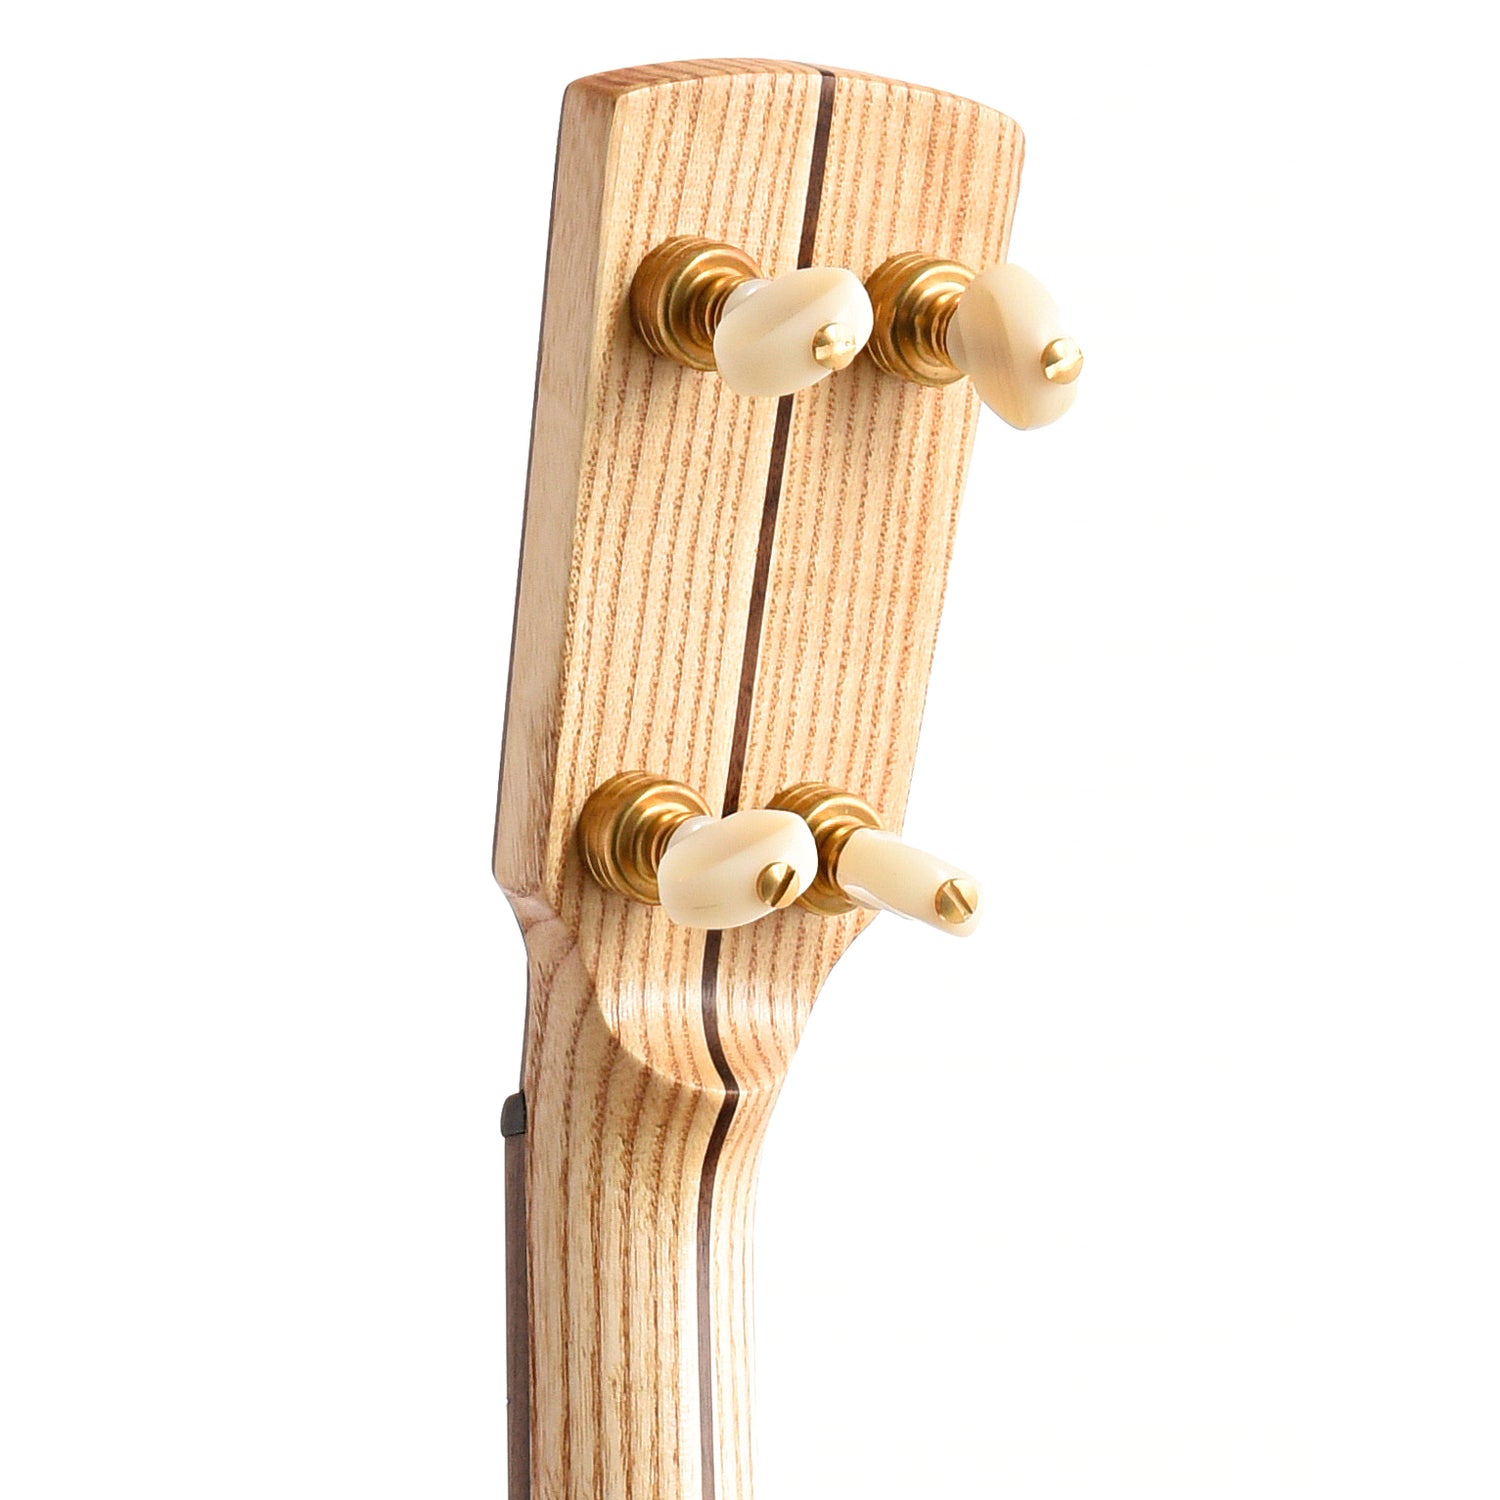 Image 8 of Dogwood Banjo Co. 12" Openback Banjo, No. 177 - SKU# DW177 : Product Type Open Back Banjos : Elderly Instruments